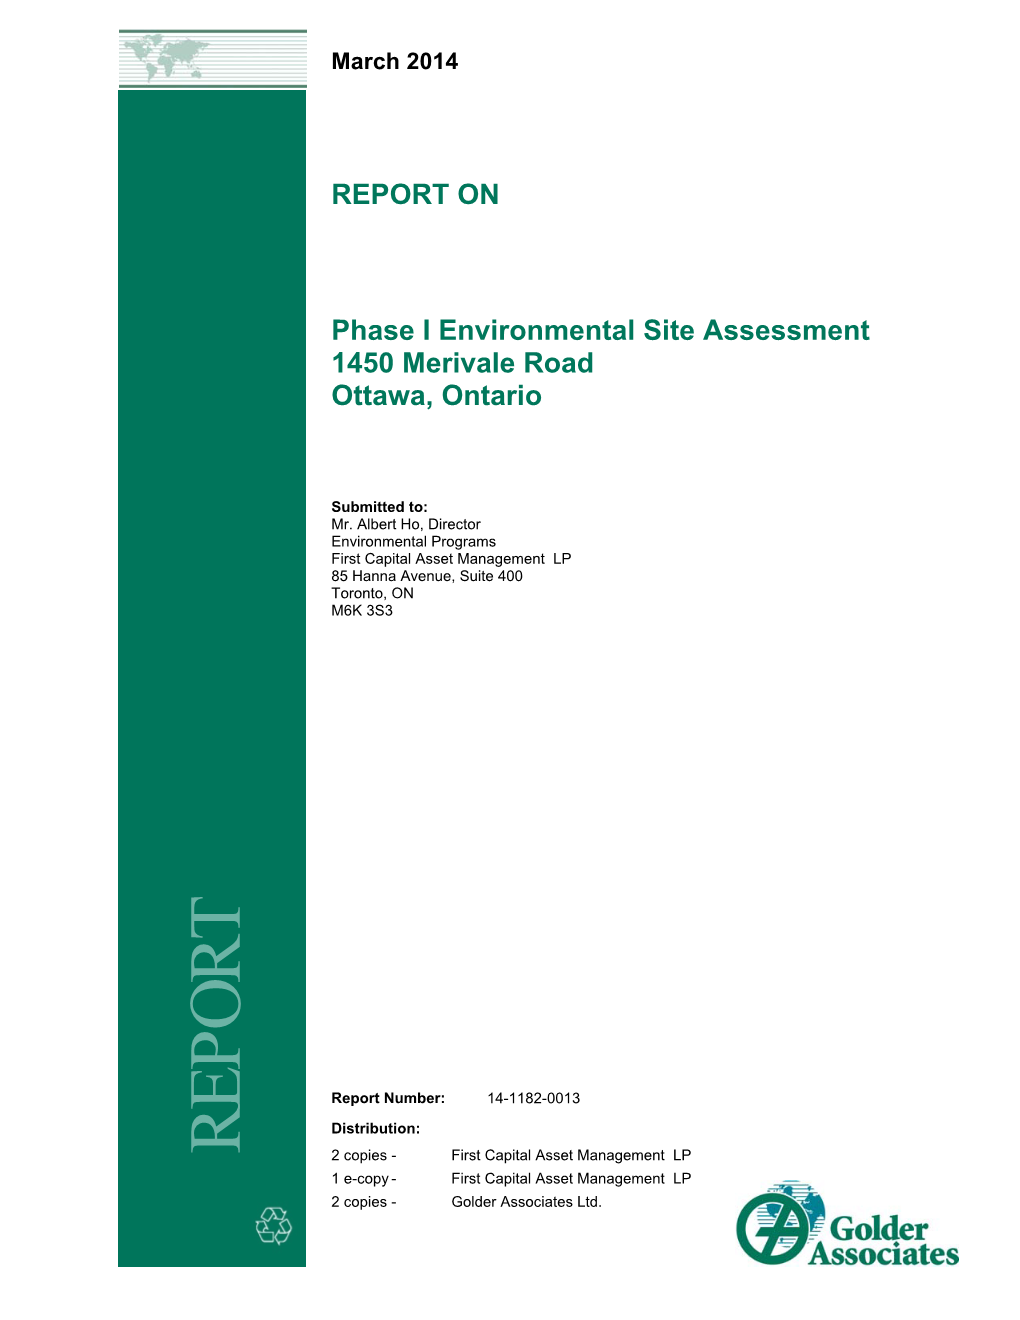 REPORT on Phase I Environmental Site Assessment 1450 Merivale